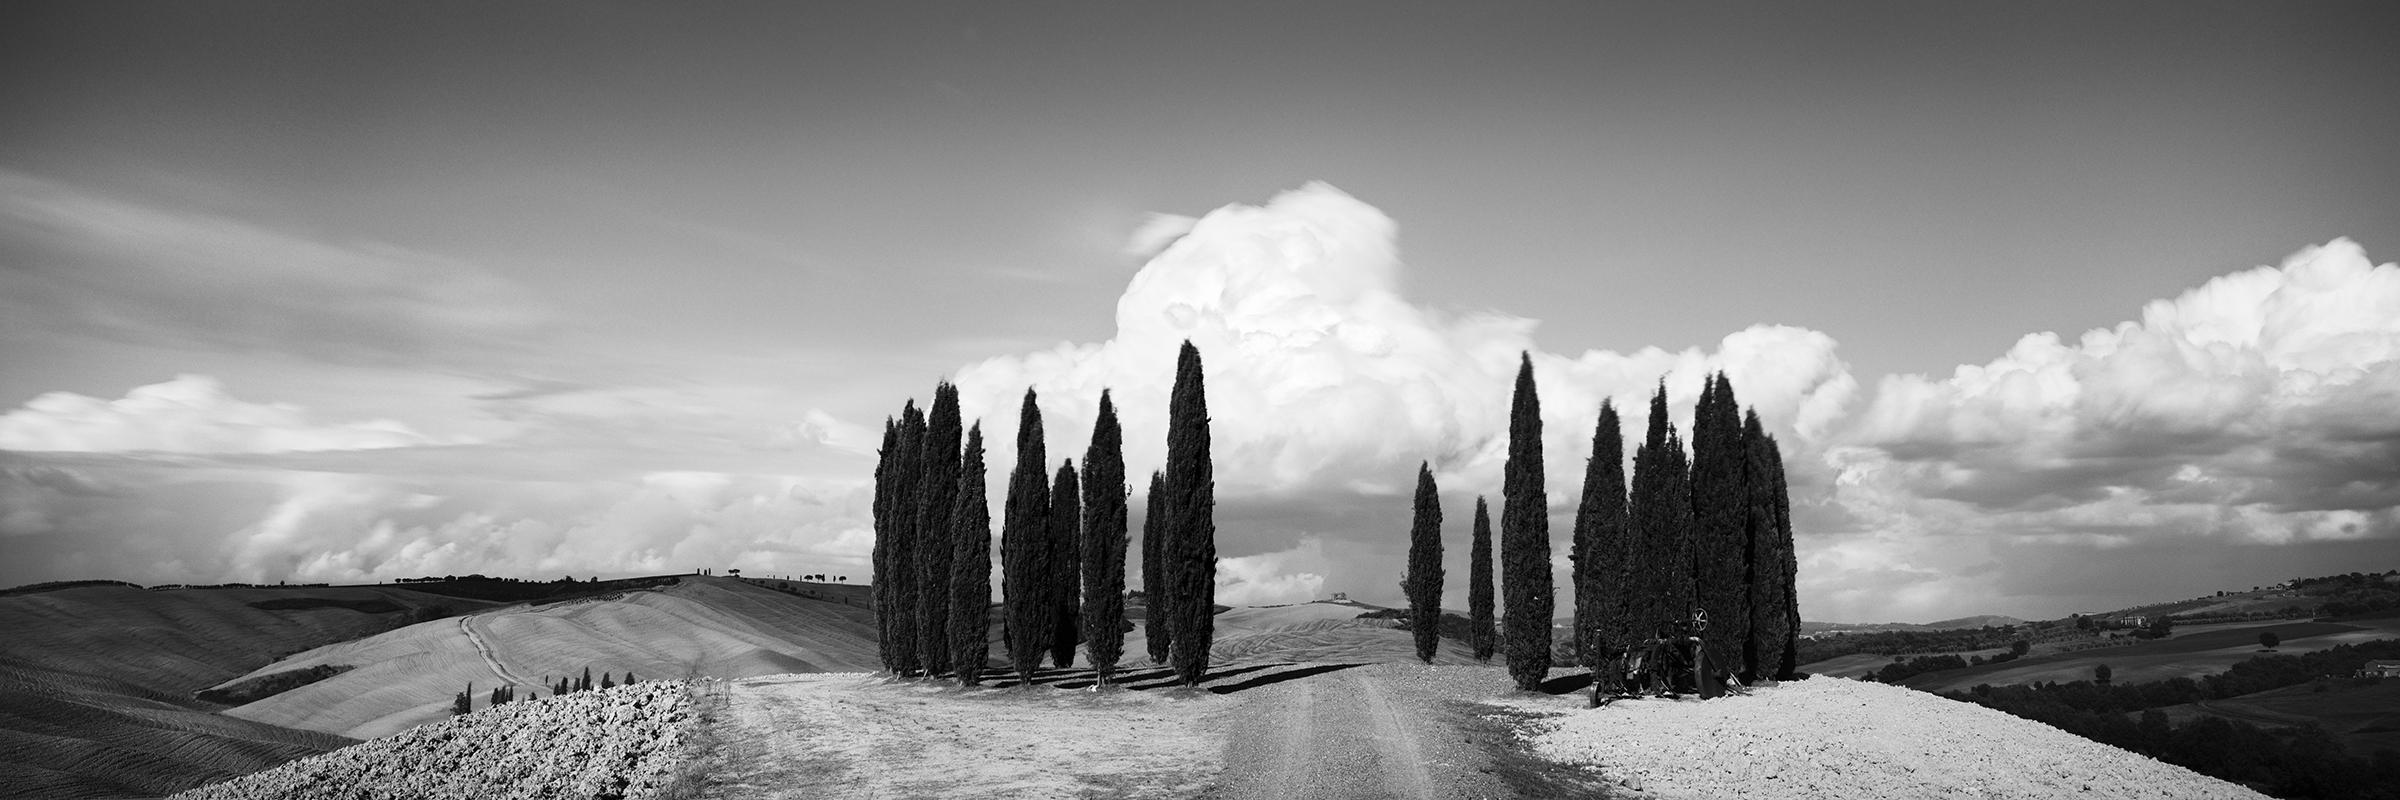 Kreis mit Zypressenbäumen, Toskana, Schwarz-Weiß-Kunstfotografie, Landschaft